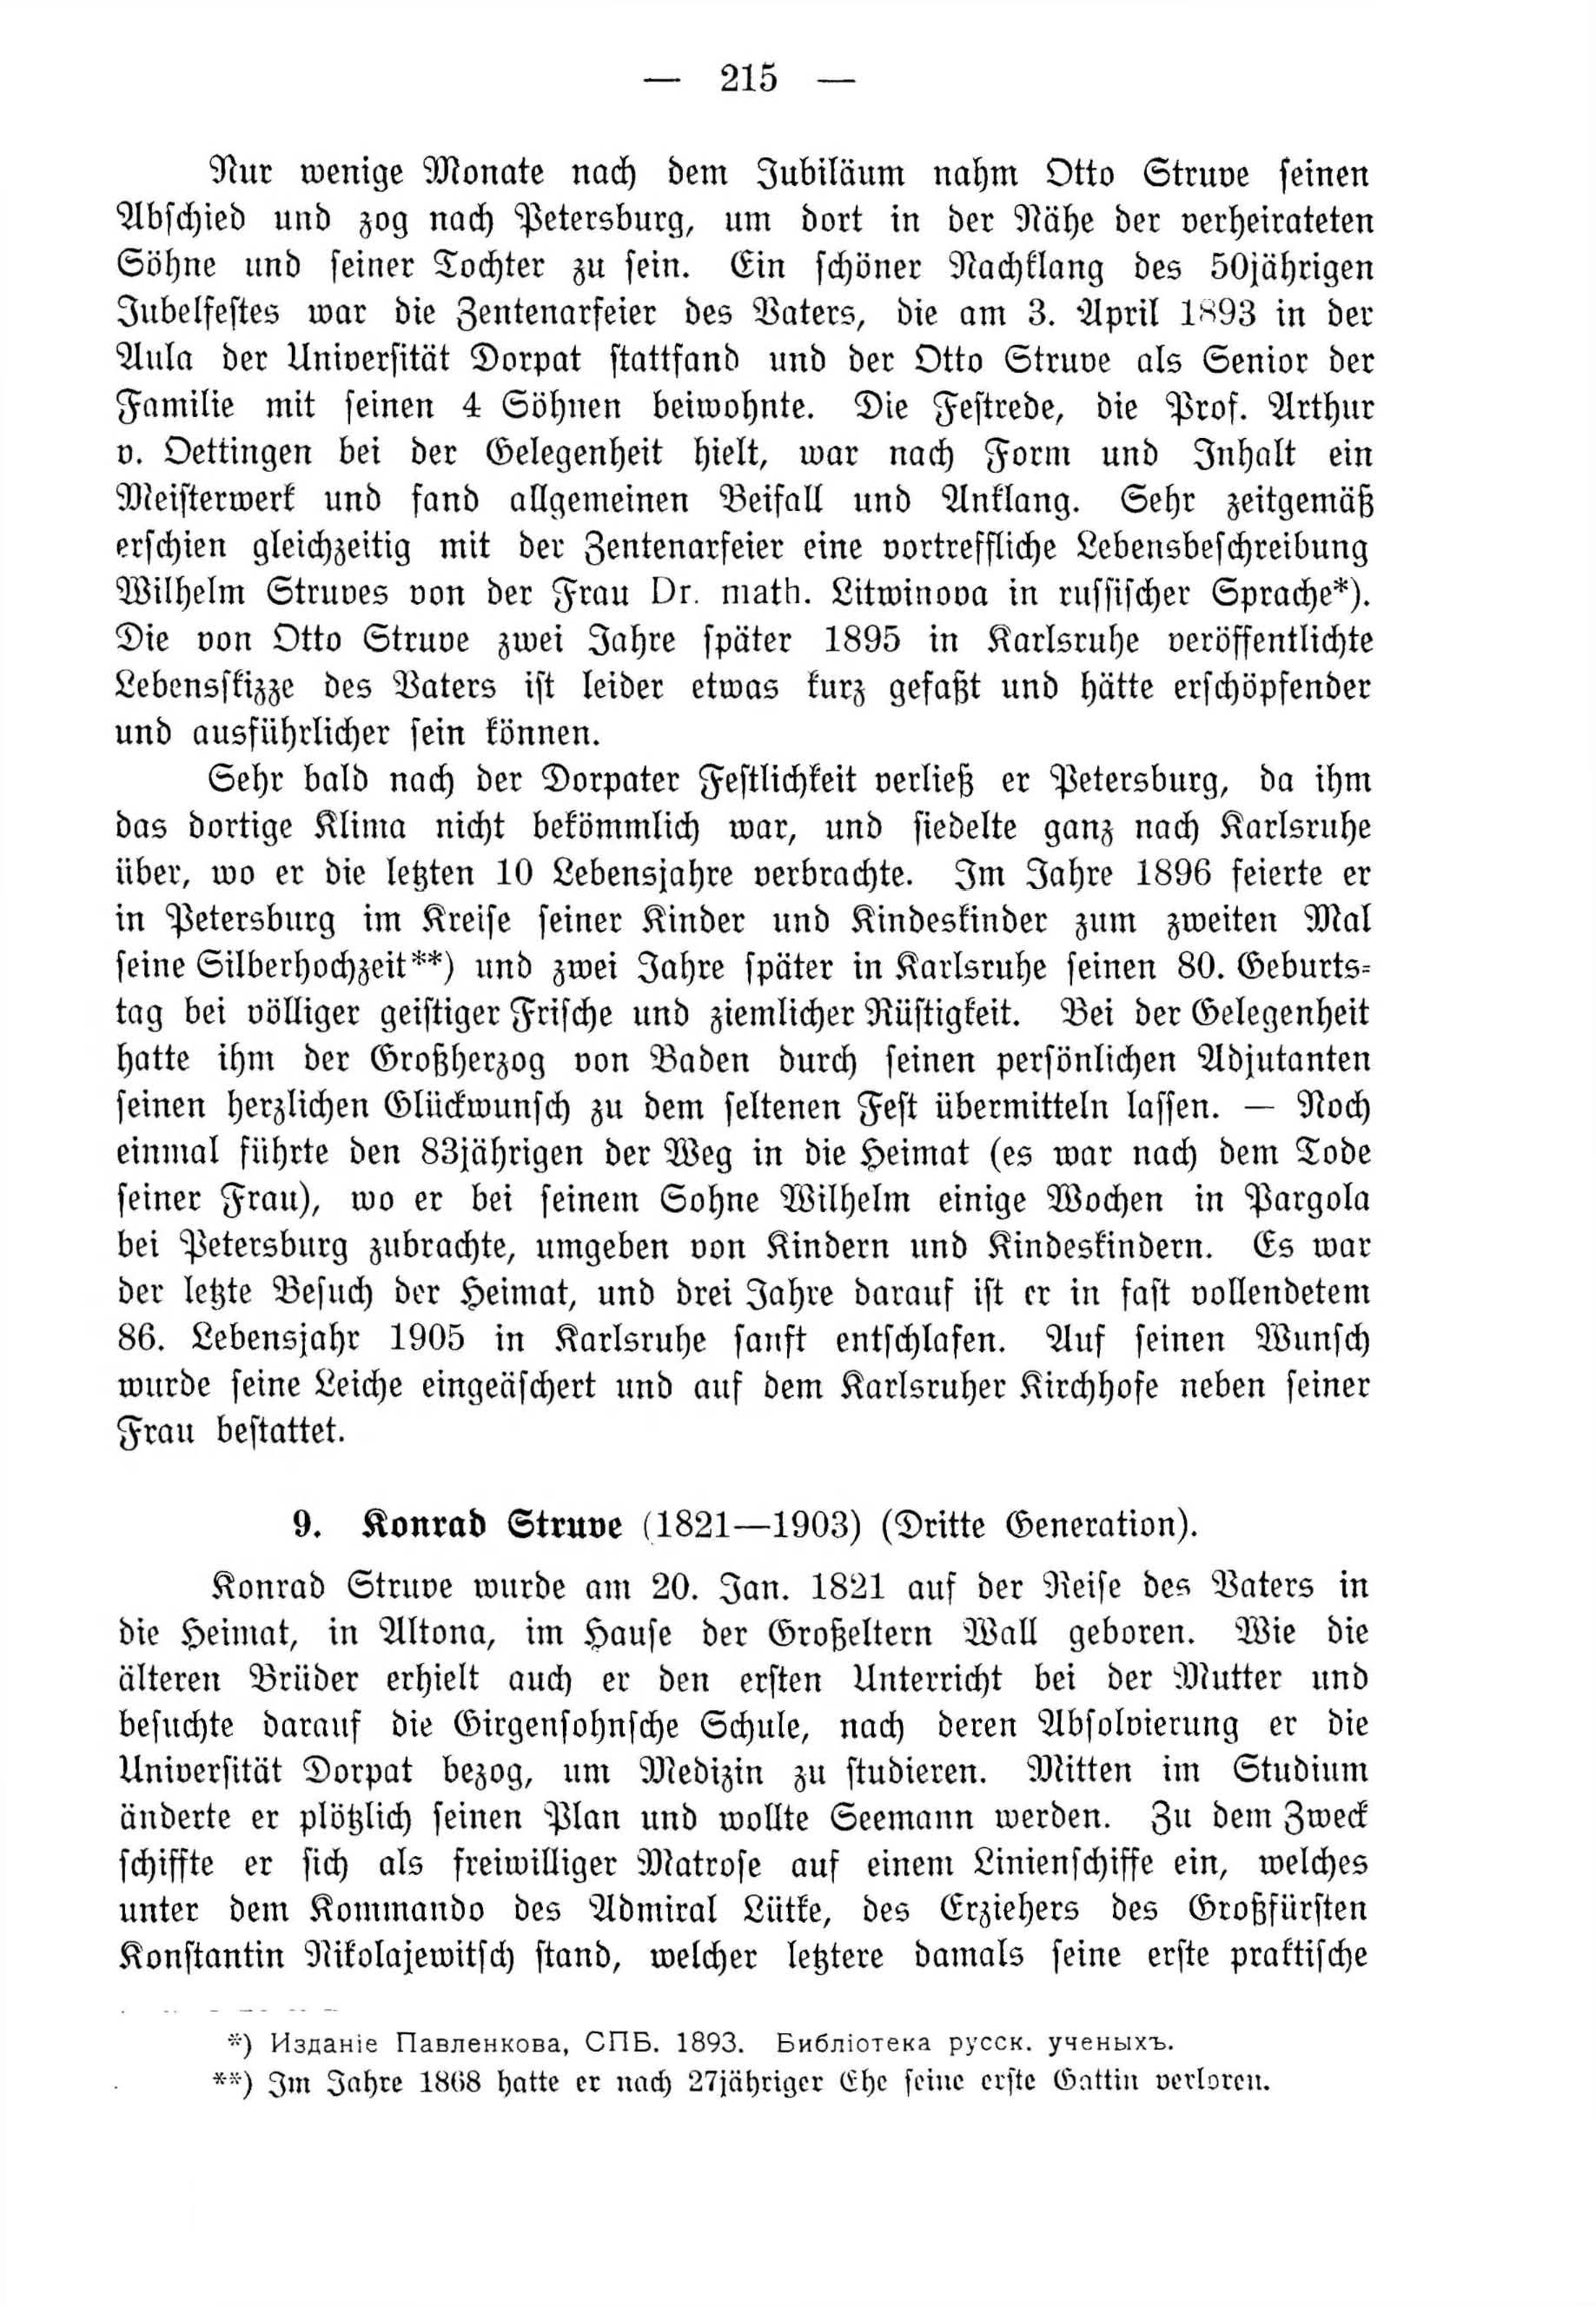 Deutsche Monatsschrift für Russland [4] (1915) | 215. (215) Haupttext